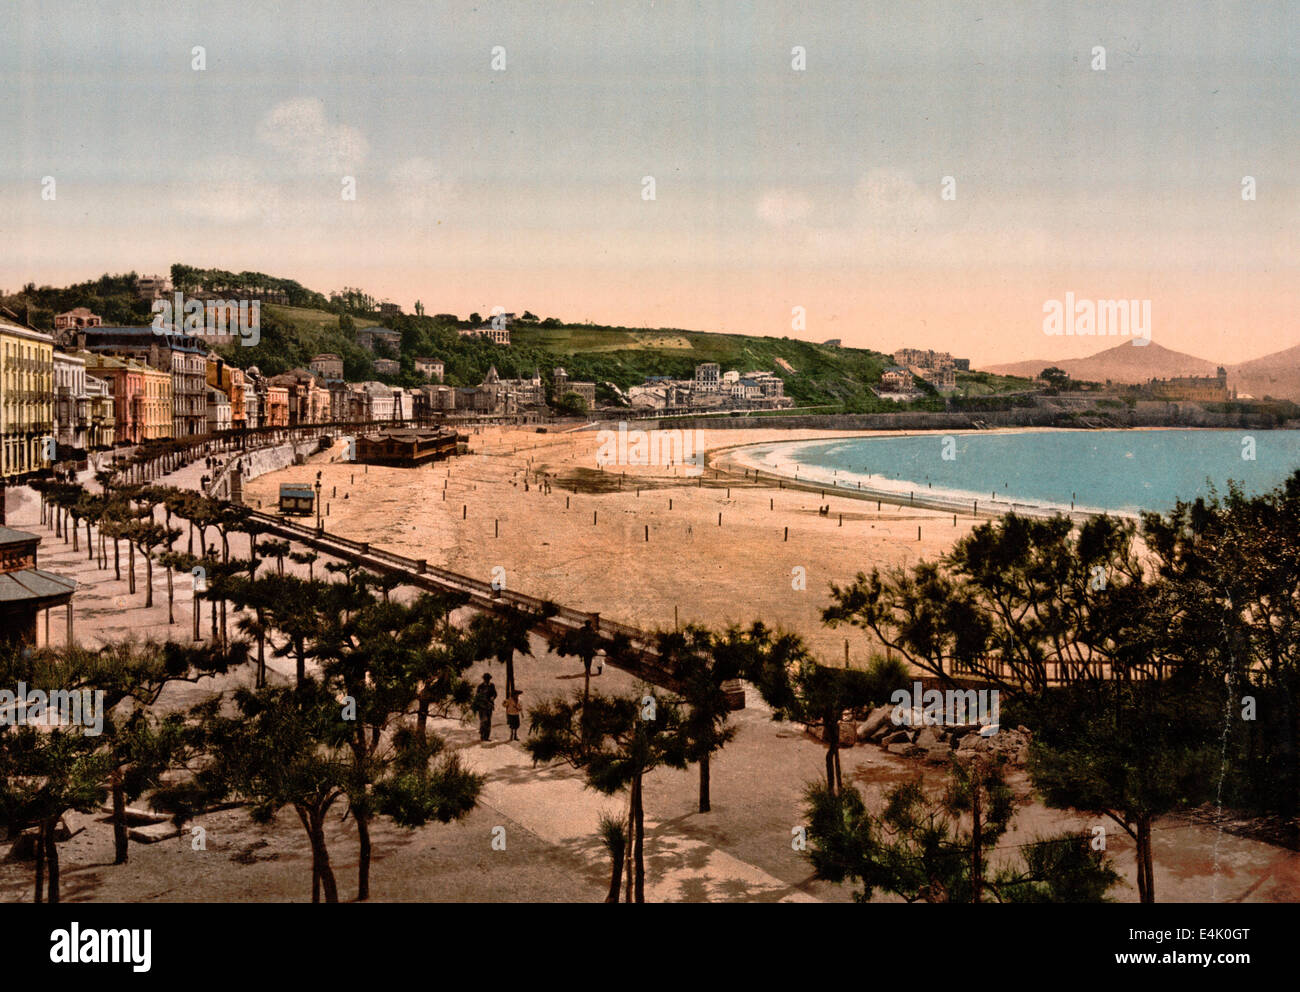 The beach, San Sebastian, Spain Stock Photo